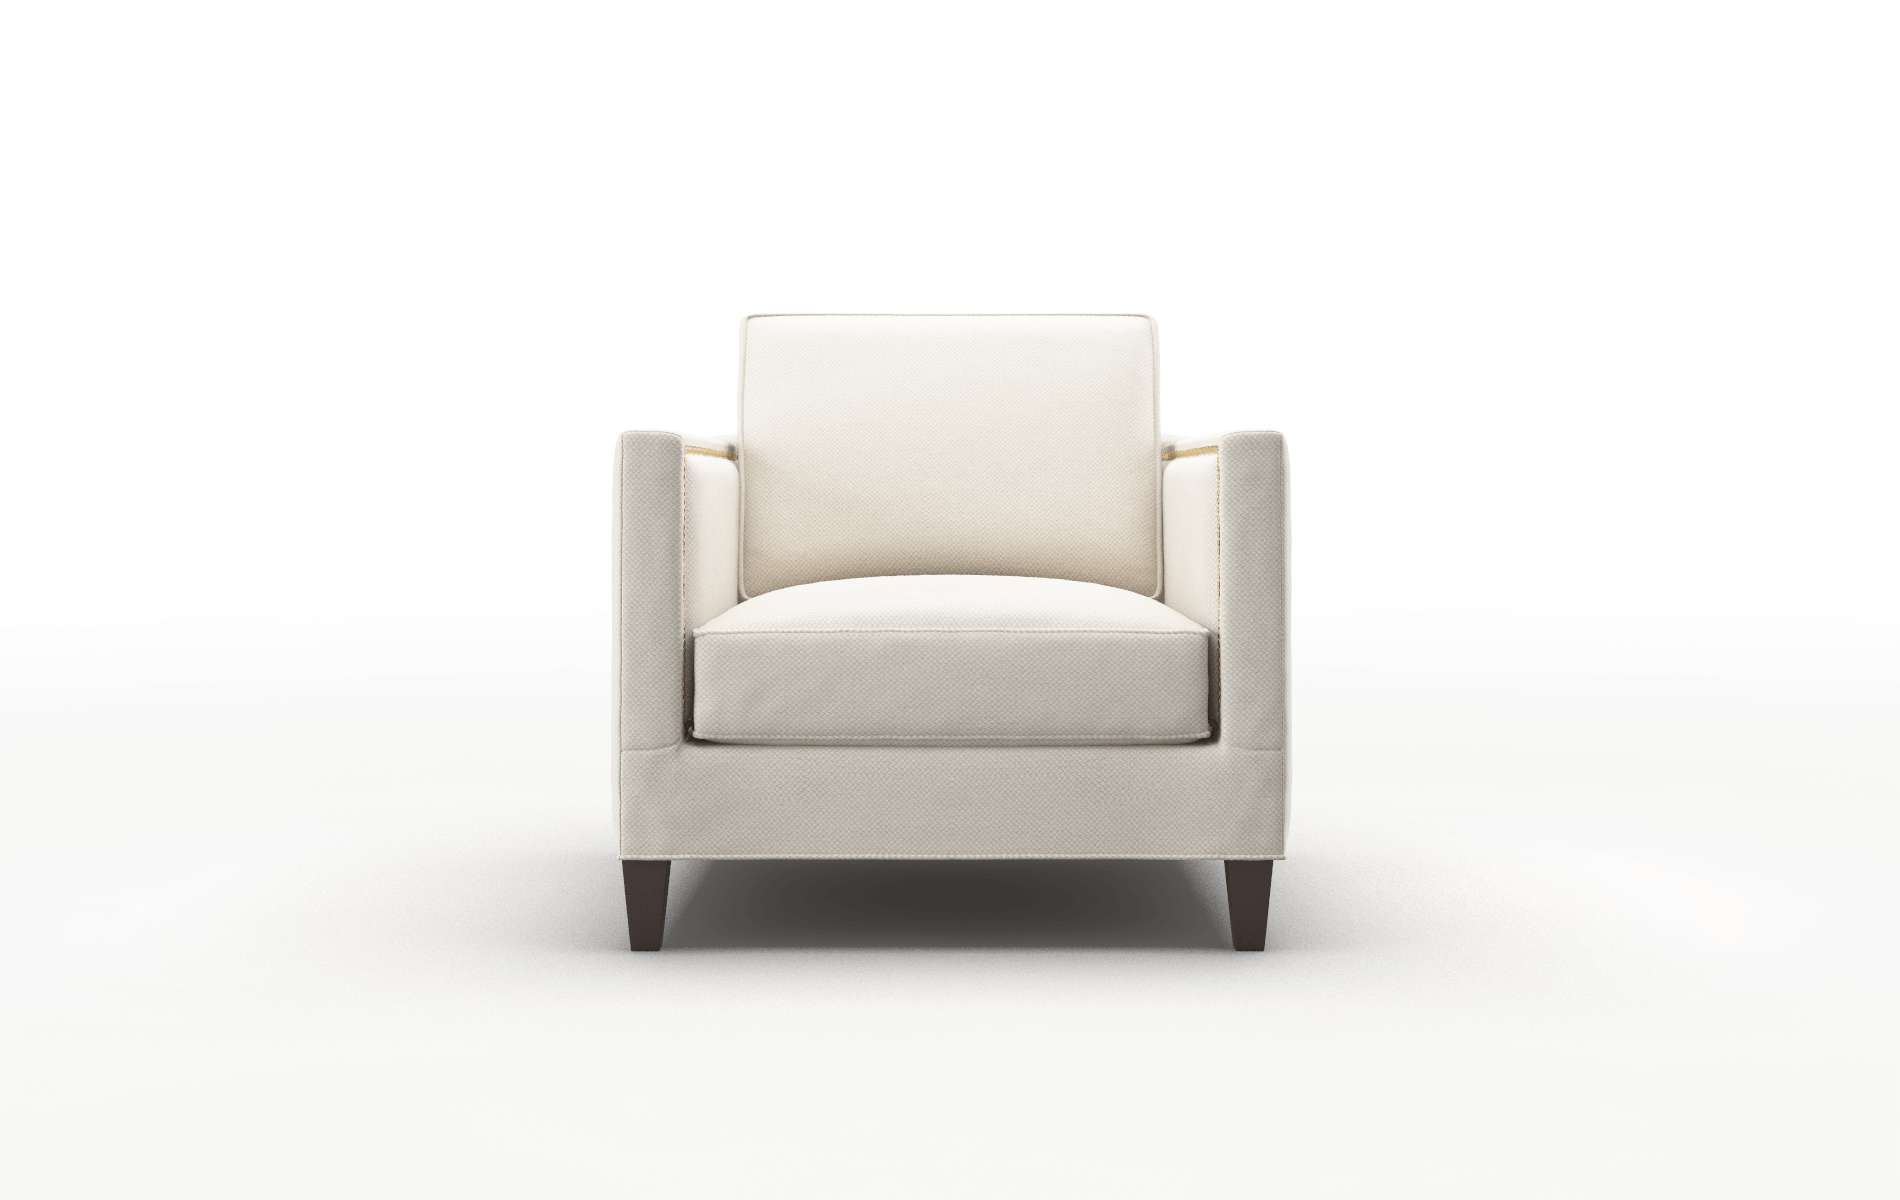 Alps Malibu Linen chair espresso legs